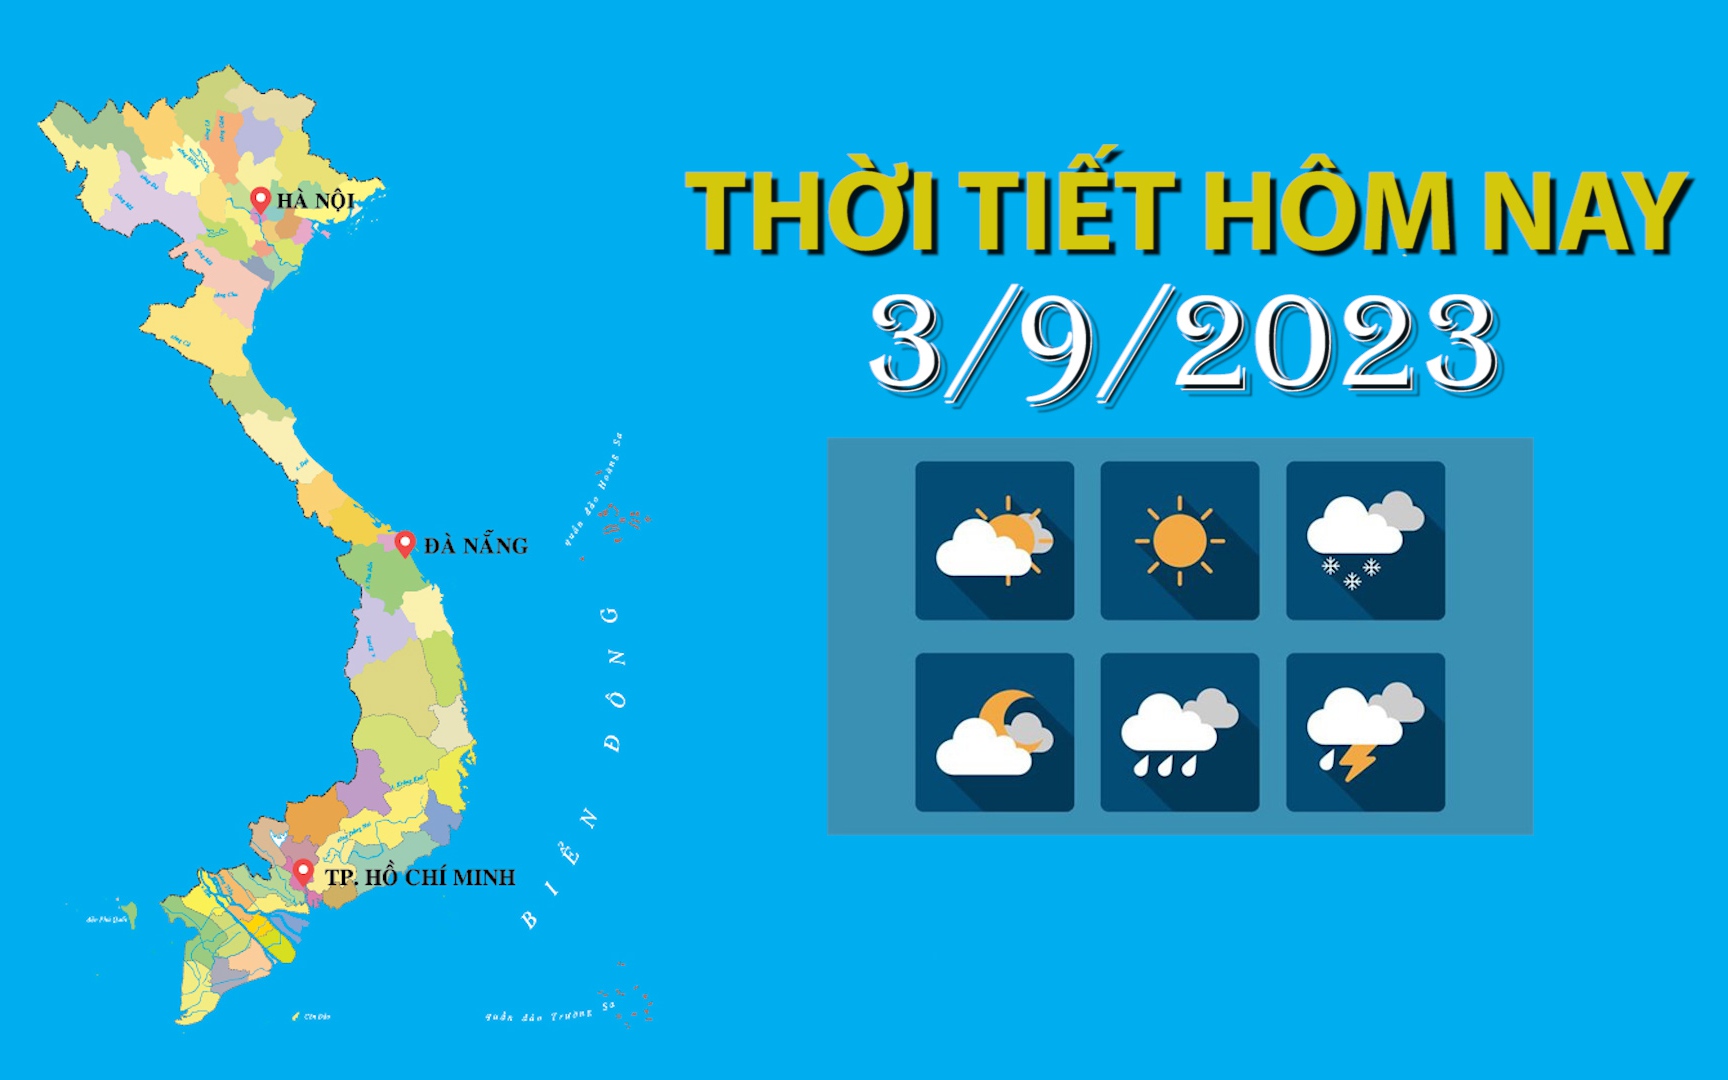 Thời tiết hôm nay 3/9/2023: Bắc Bộ, Bắc Trung Bộ nắng nóng; Tây Nguyên, Nam Bộ cục bộ mưa to đến rất to